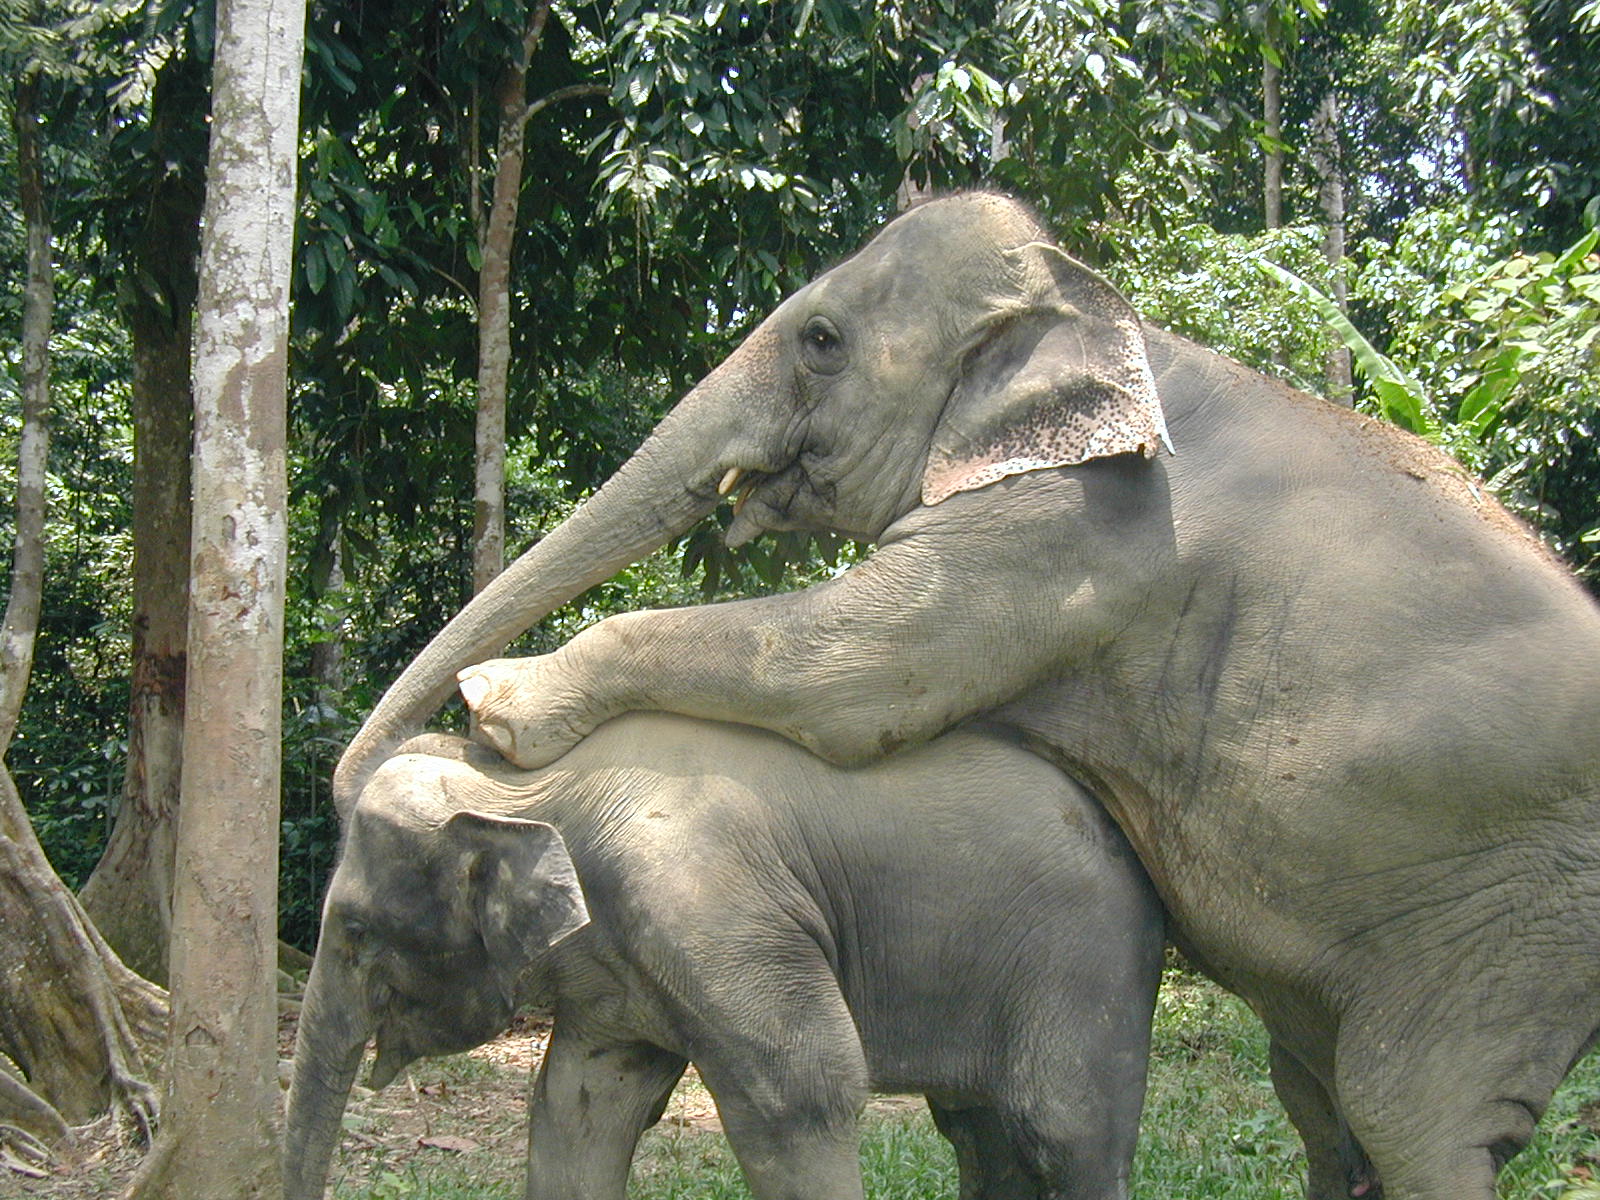 photo of elephant lovemaking